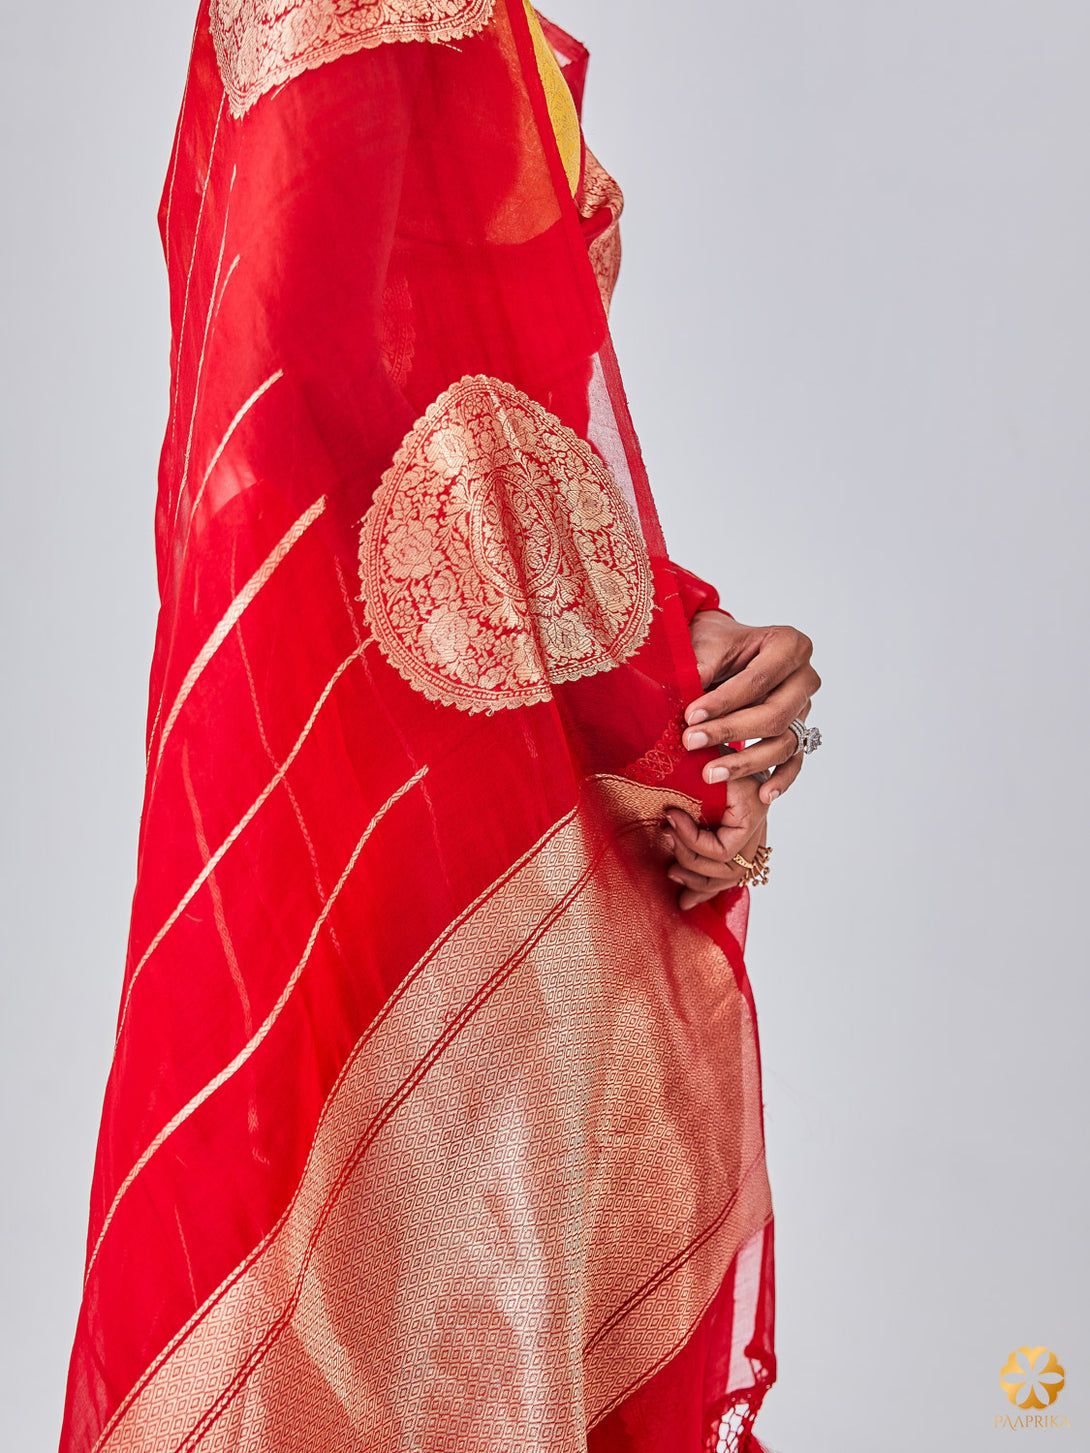 Beautiful Drape of Exquisite Banarasi Kora Organza Saree - Vibrancy and Sophistication.